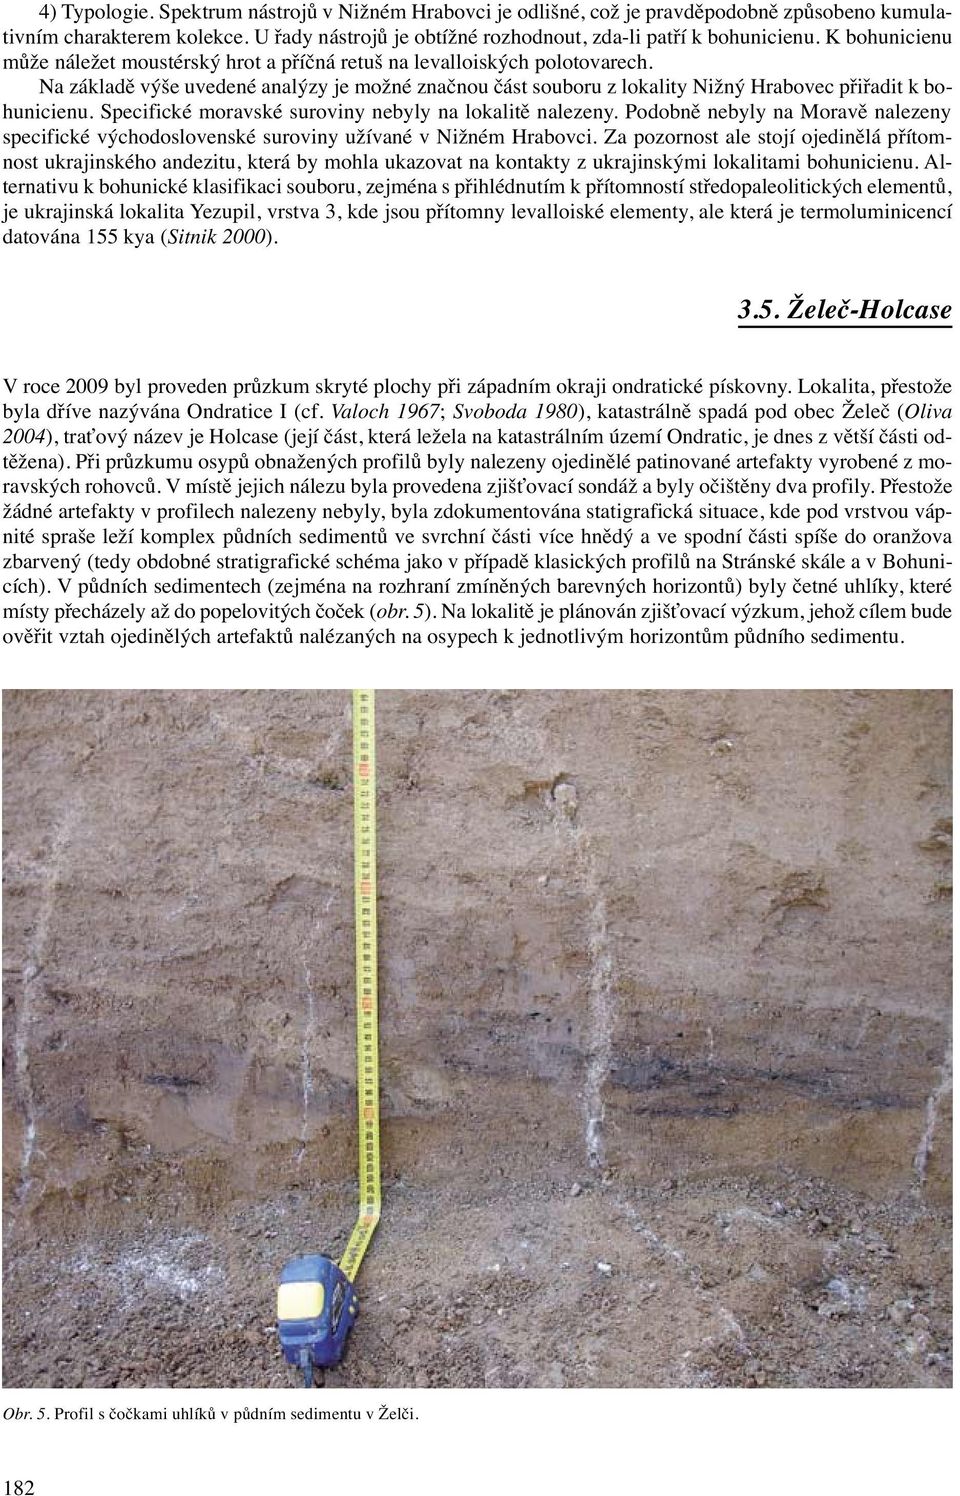 Specifické moravské suroviny nebyly na lokalitě nalezeny. Podobně nebyly na Moravě nalezeny specifické východoslovenské suroviny užívané v Nižném Hrabovci.